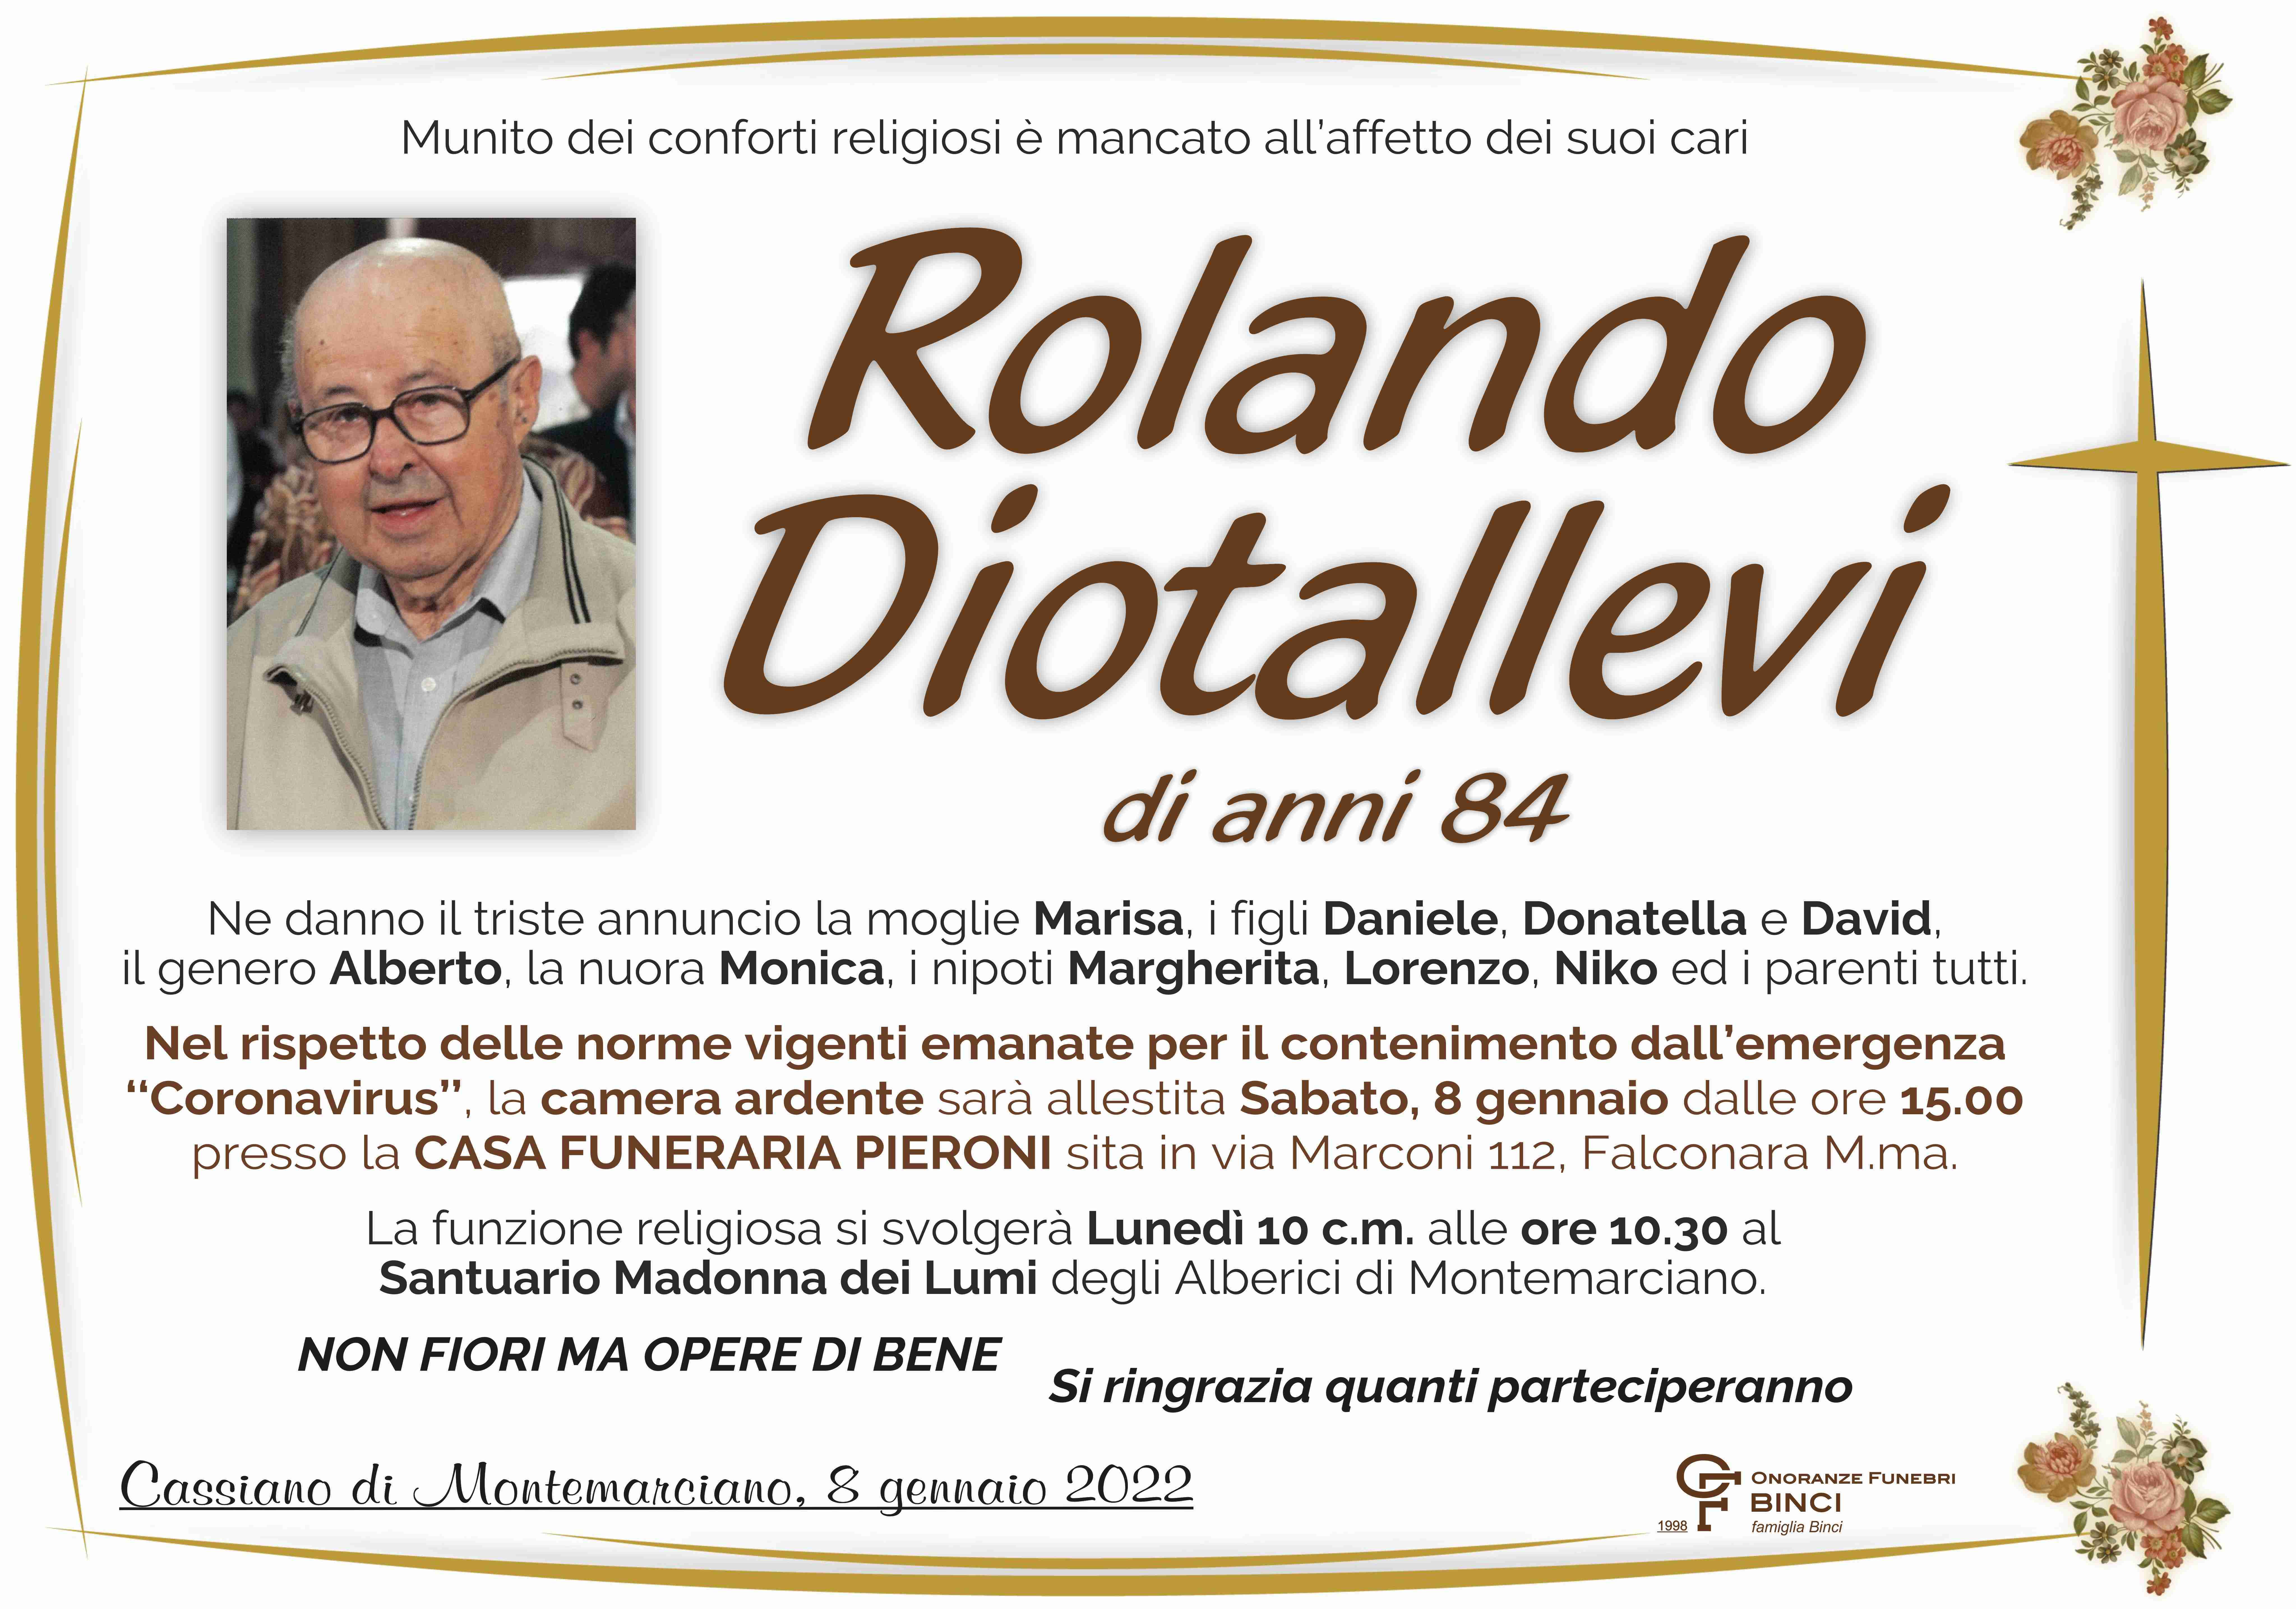 Rolando Diotallevi